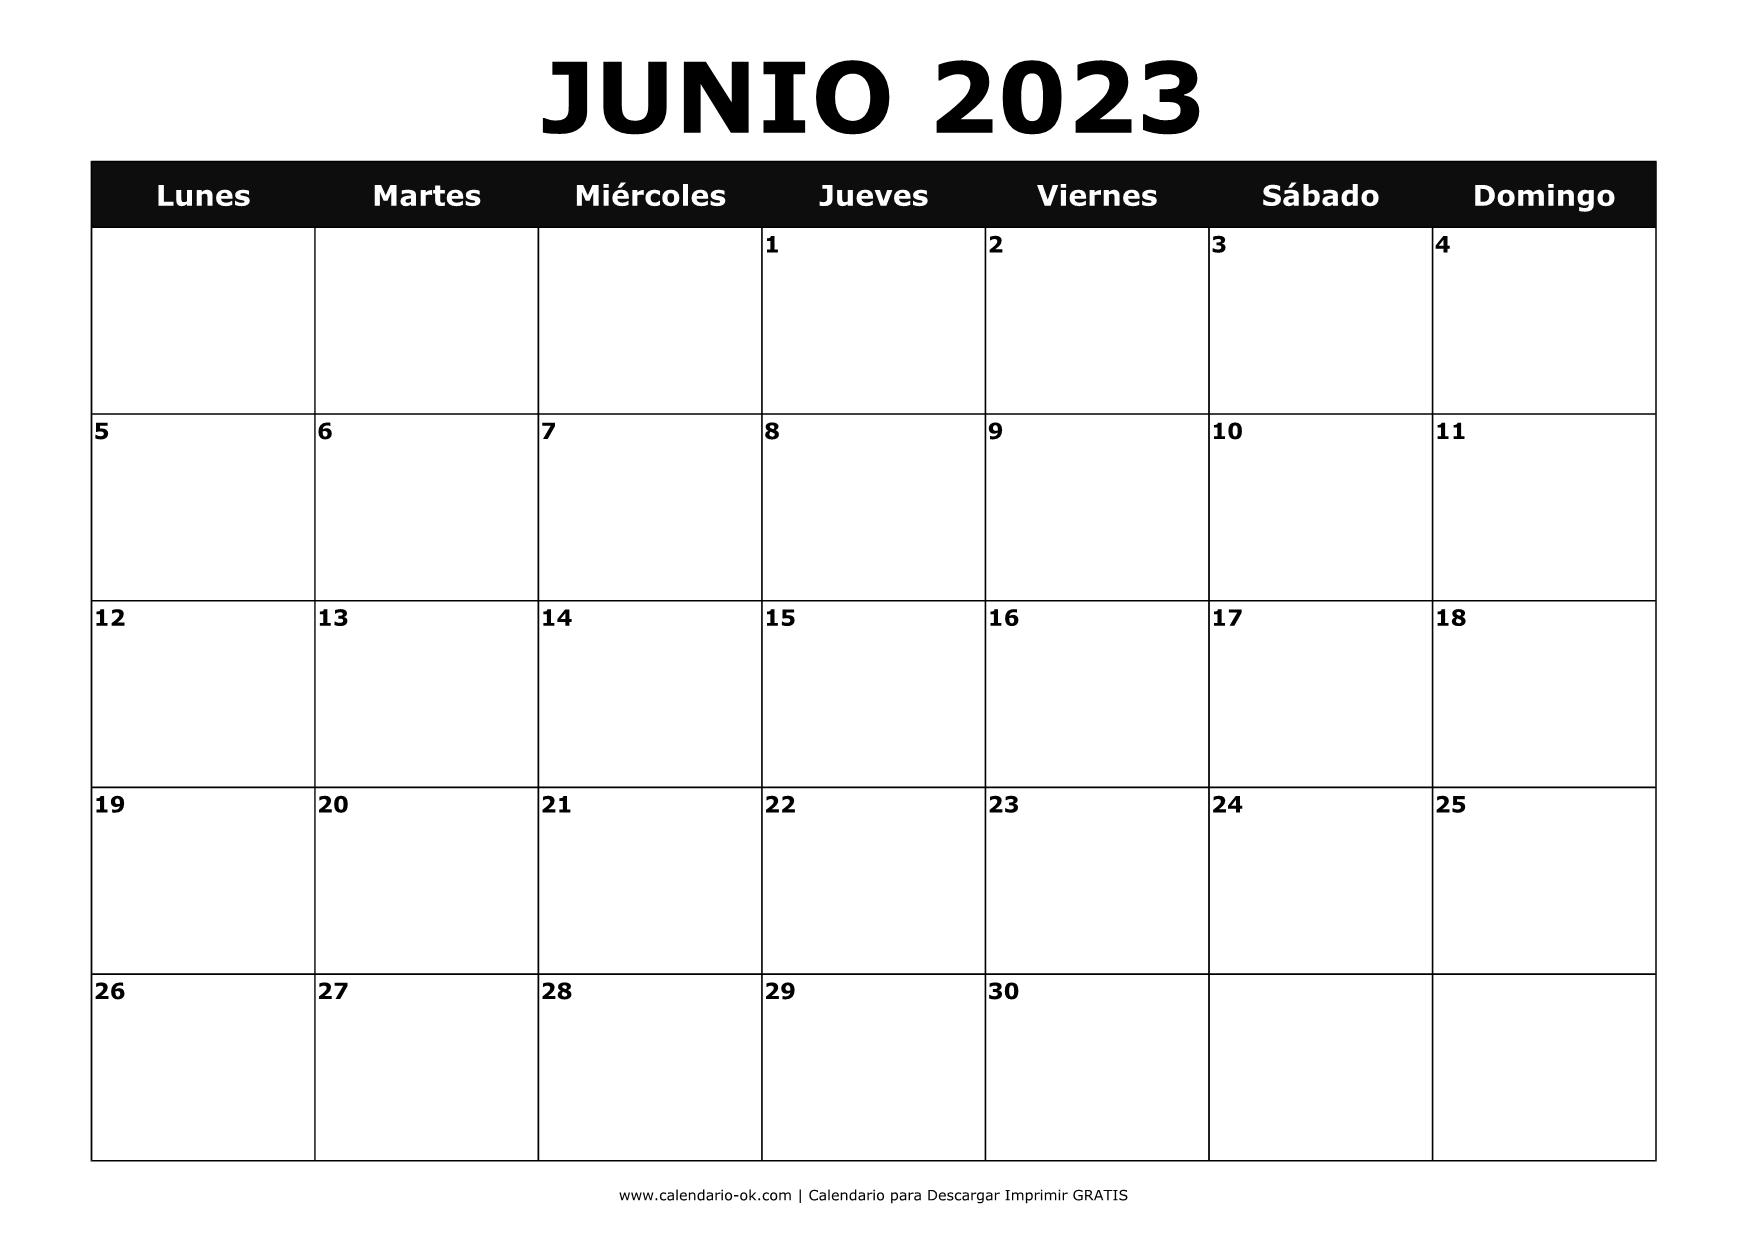 JUNIO 2023 BLANCO y NEGRO